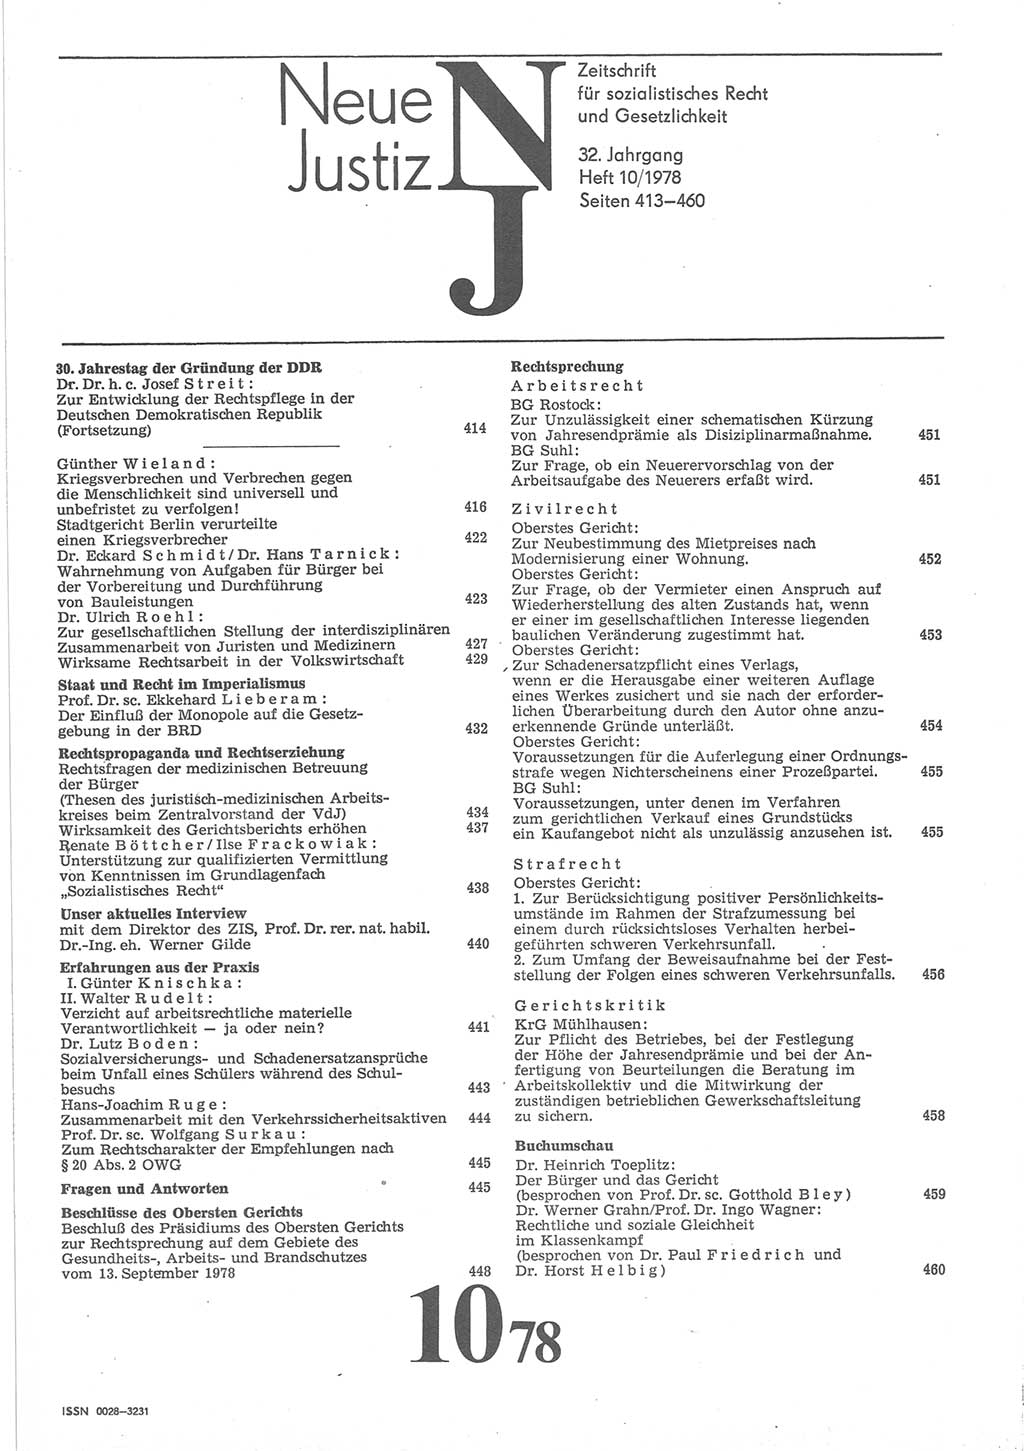 Neue Justiz (NJ), Zeitschrift für sozialistisches Recht und Gesetzlichkeit [Deutsche Demokratische Republik (DDR)], 32. Jahrgang 1978, Seite 413 (NJ DDR 1978, S. 413)